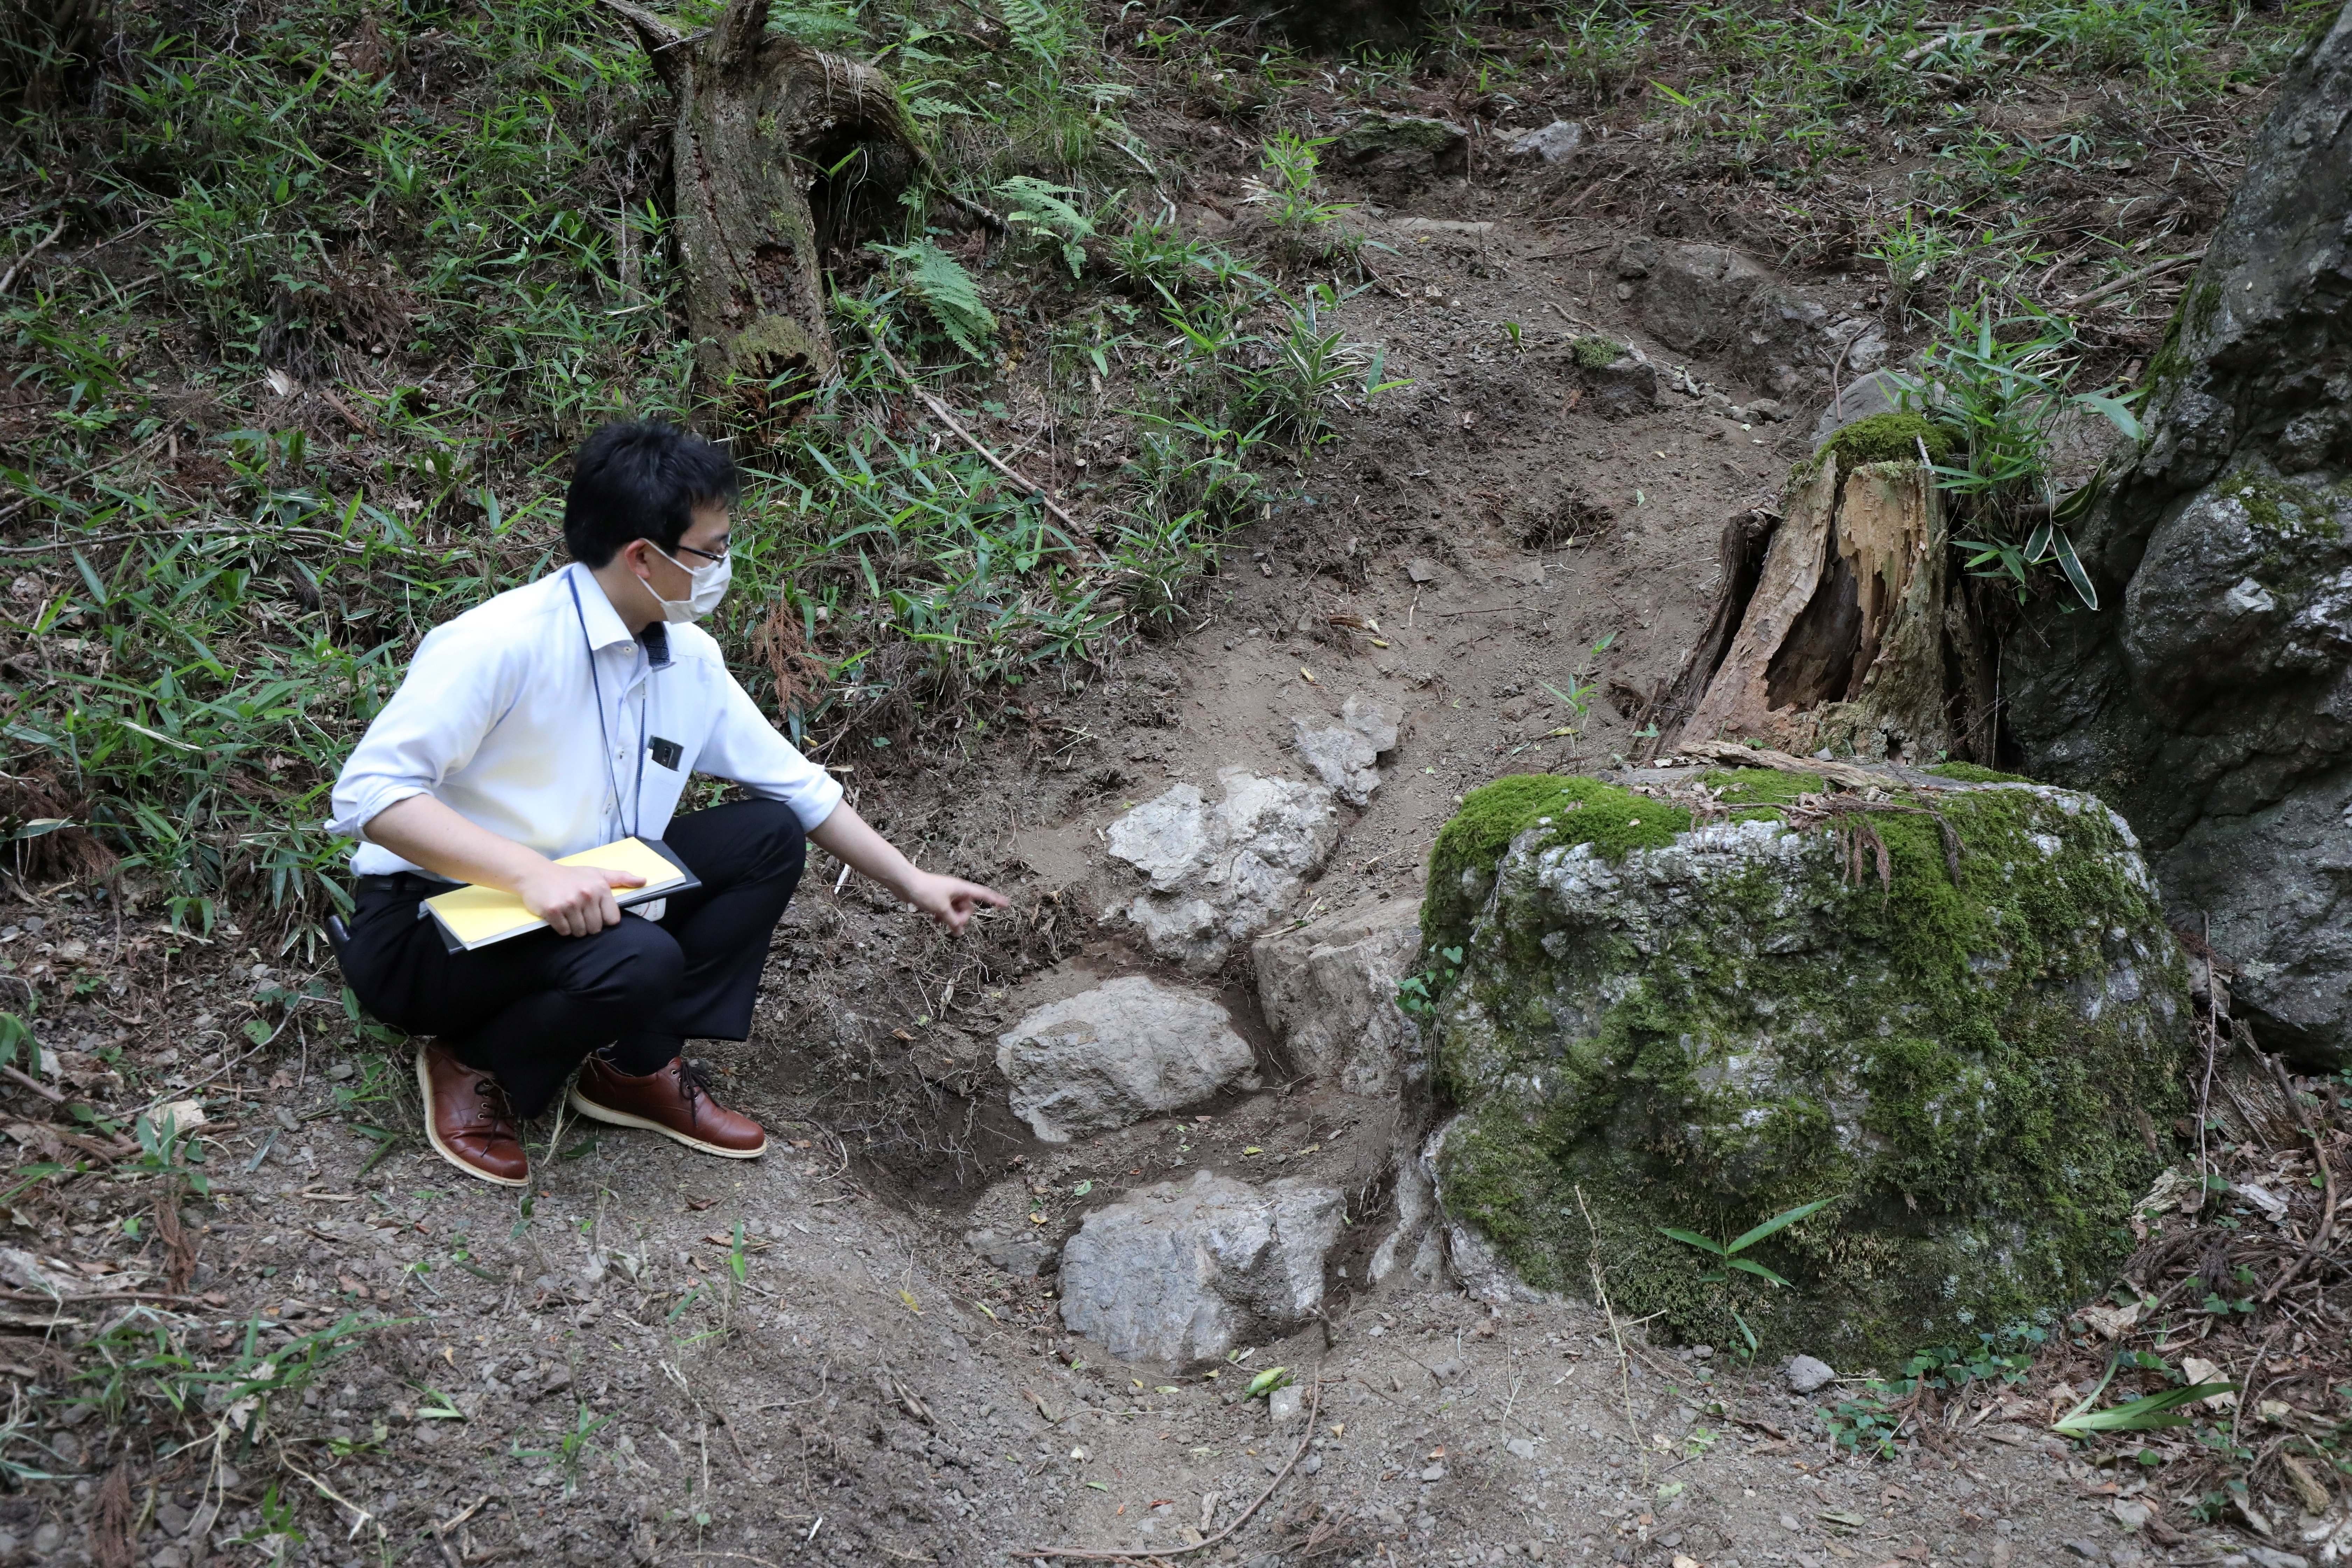 戦国武将・京極氏の遺跡荒らされる　スコップで掘った跡「文化財知識ある人か」　滋賀